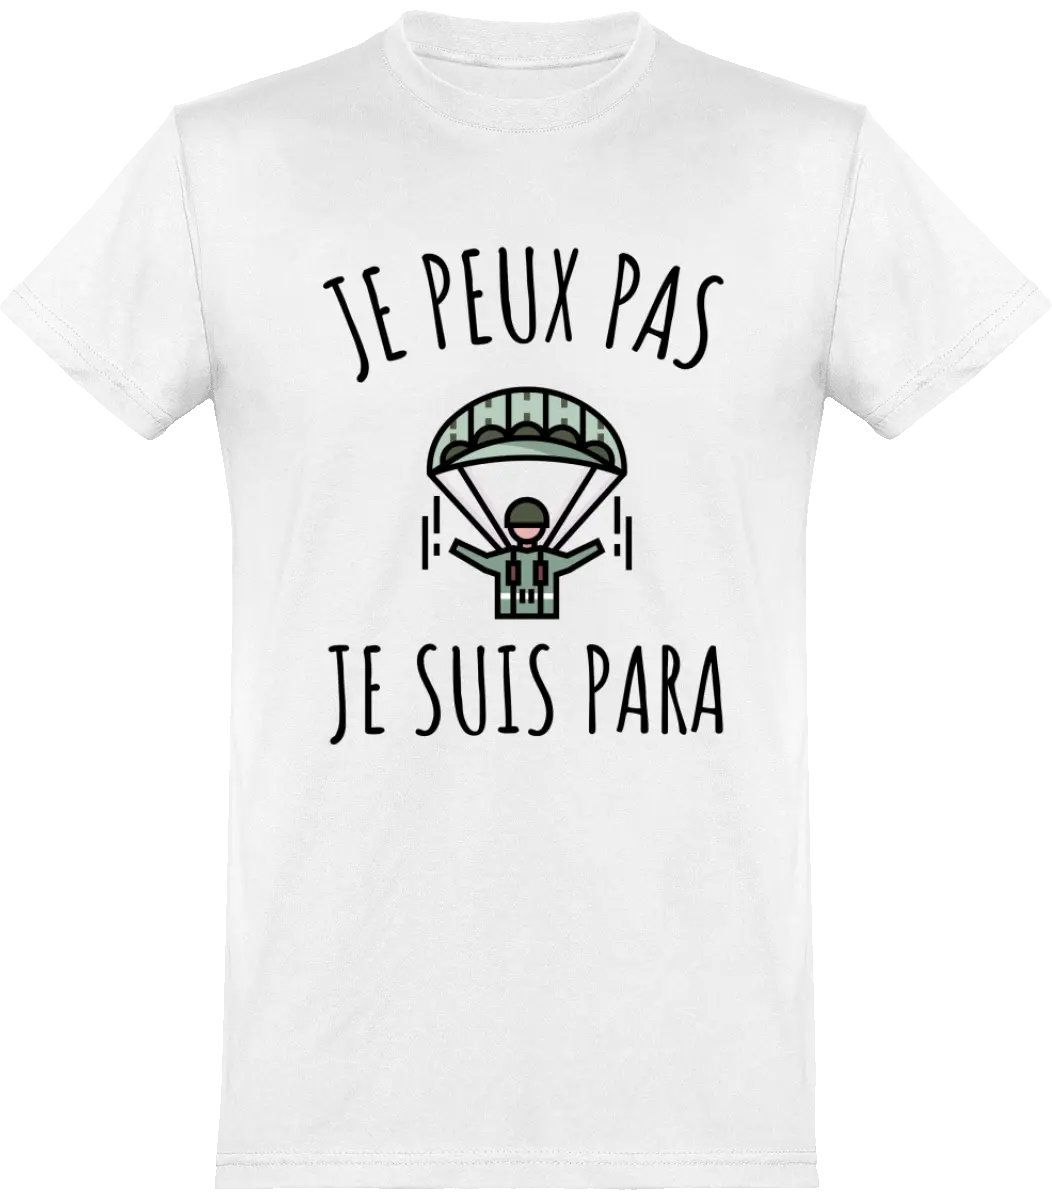 T-shirt Militaire "Je peux pas je suis para" | Mixte - French Humour